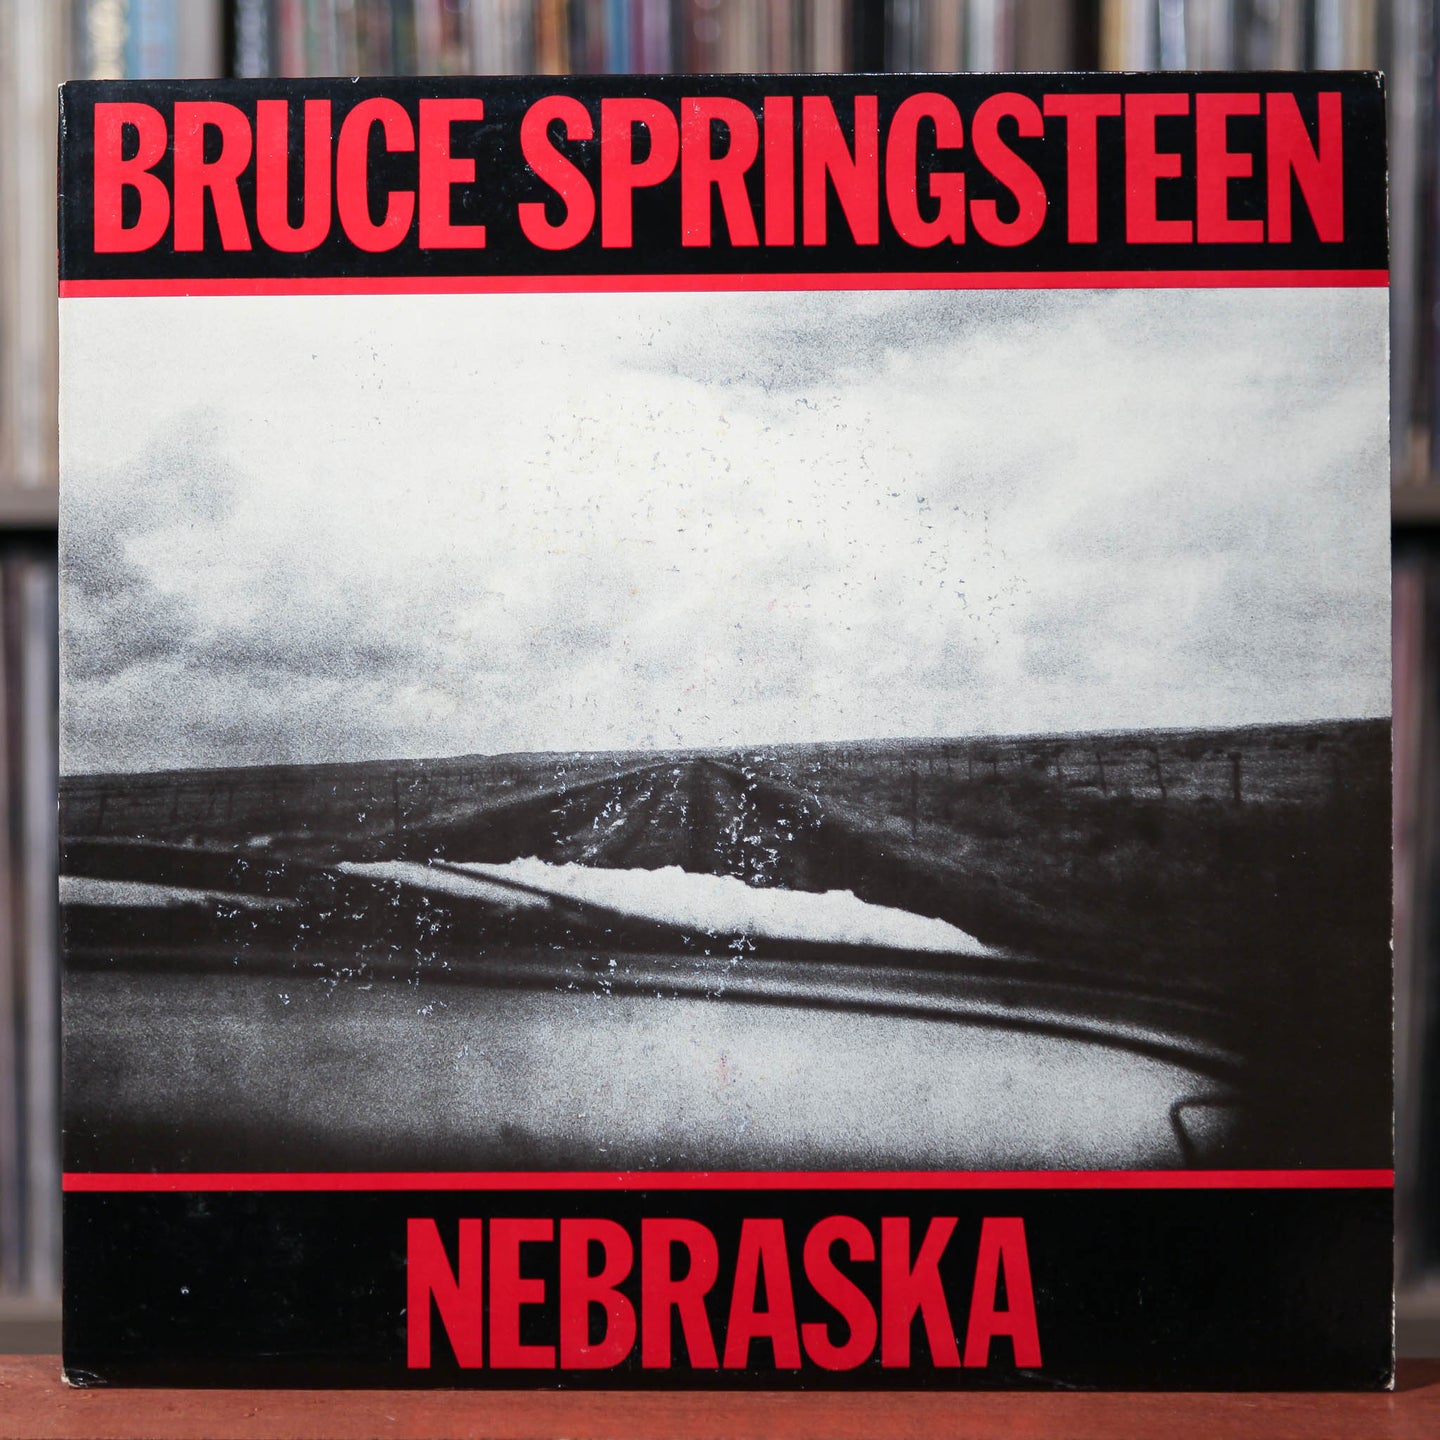 Bruce Springsteen - Nebraska  - 1982 CBS, VG+/VG+